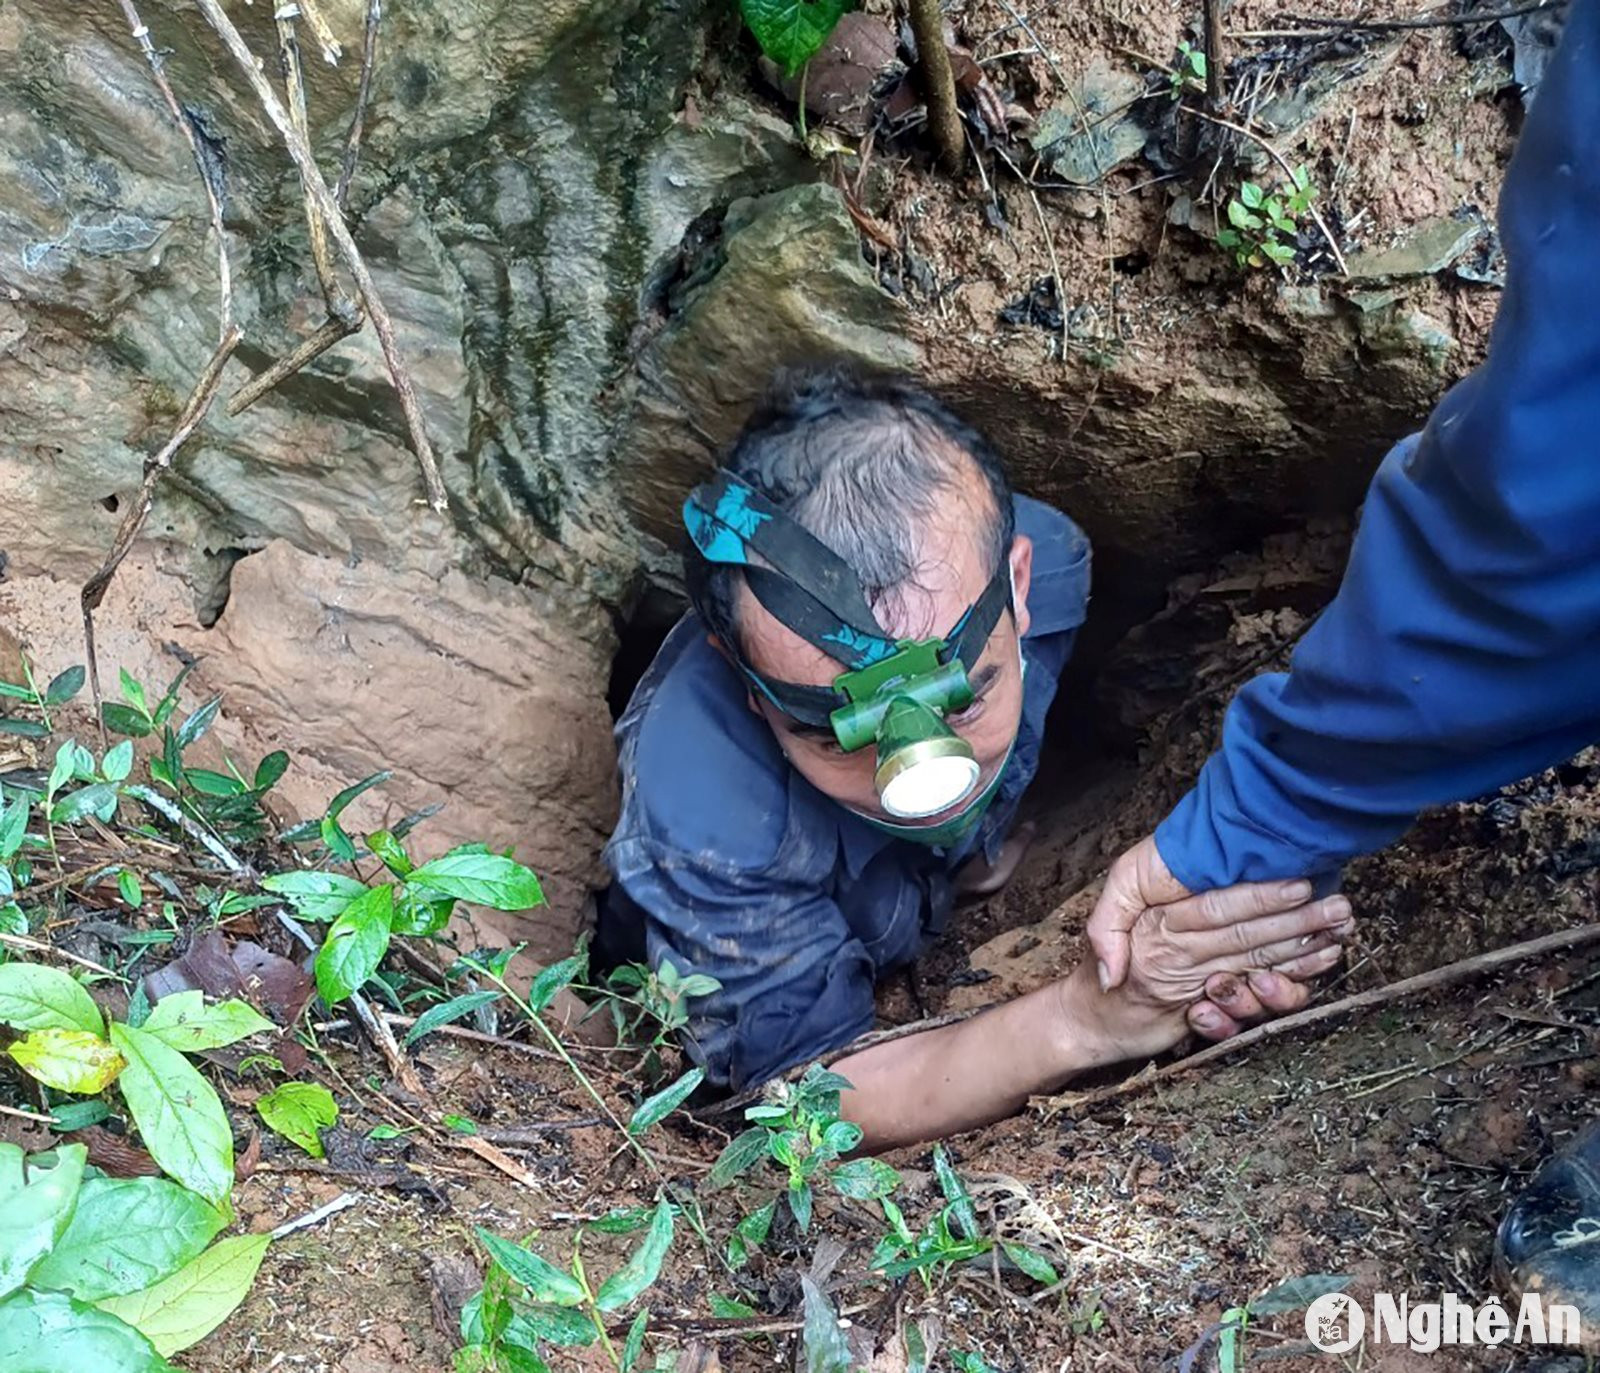 Cán bộ, chiến sĩ Đội quy tập phải chui vào hang sâu để tìm kiếm các dấu tích các phần mộ của liệt sĩ trên nước bạn Lào